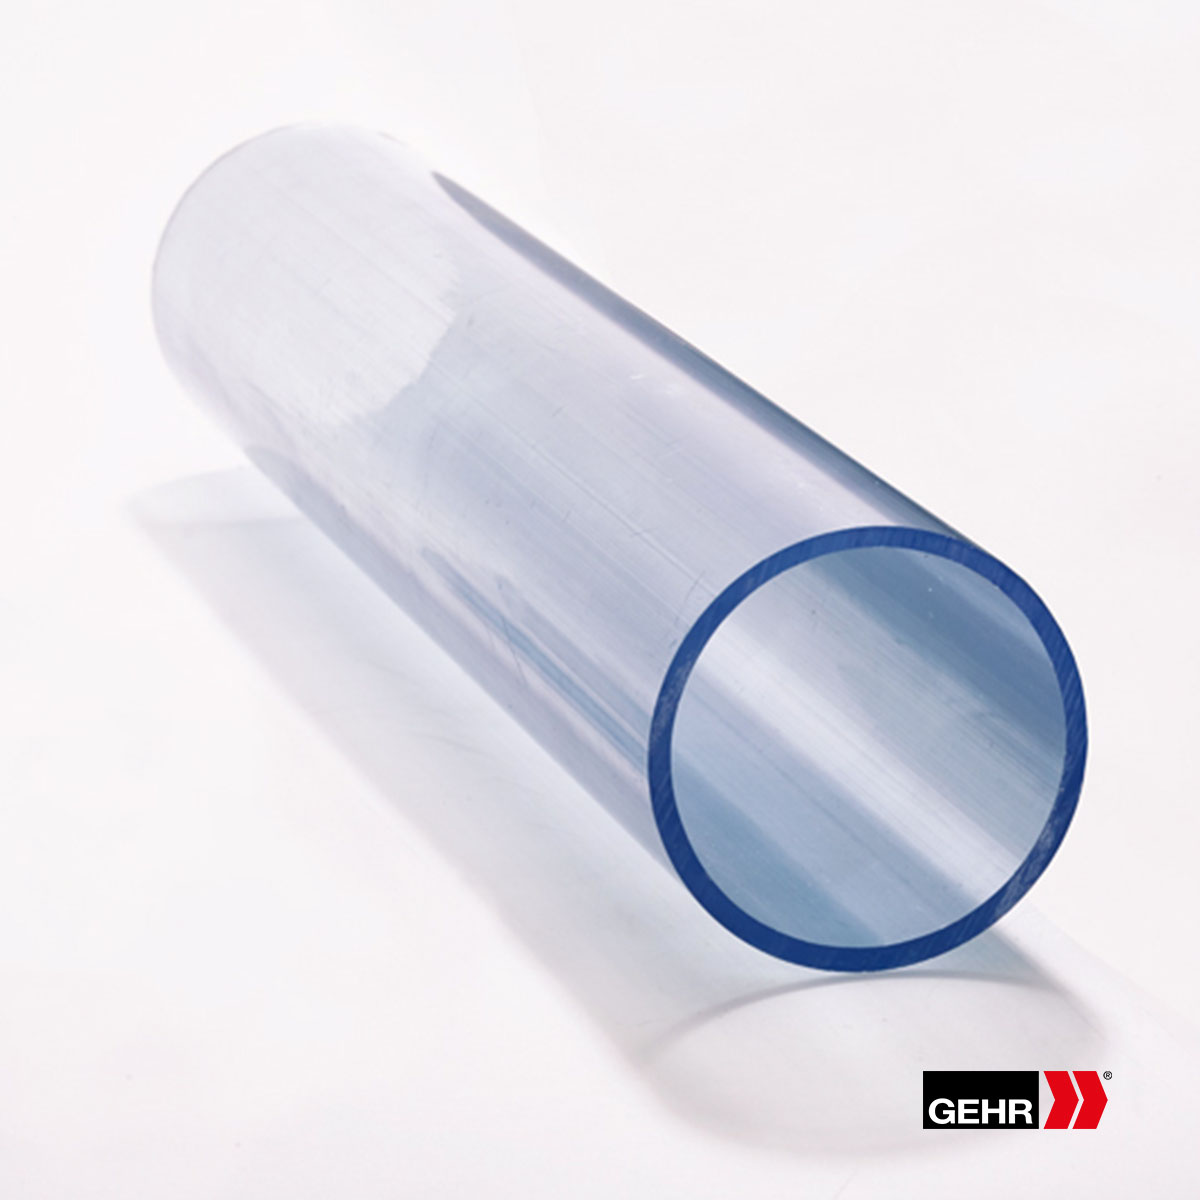 GEHR PVC-U Tubes 10 x 1.2 mm (unit = 10 pc.) transparent